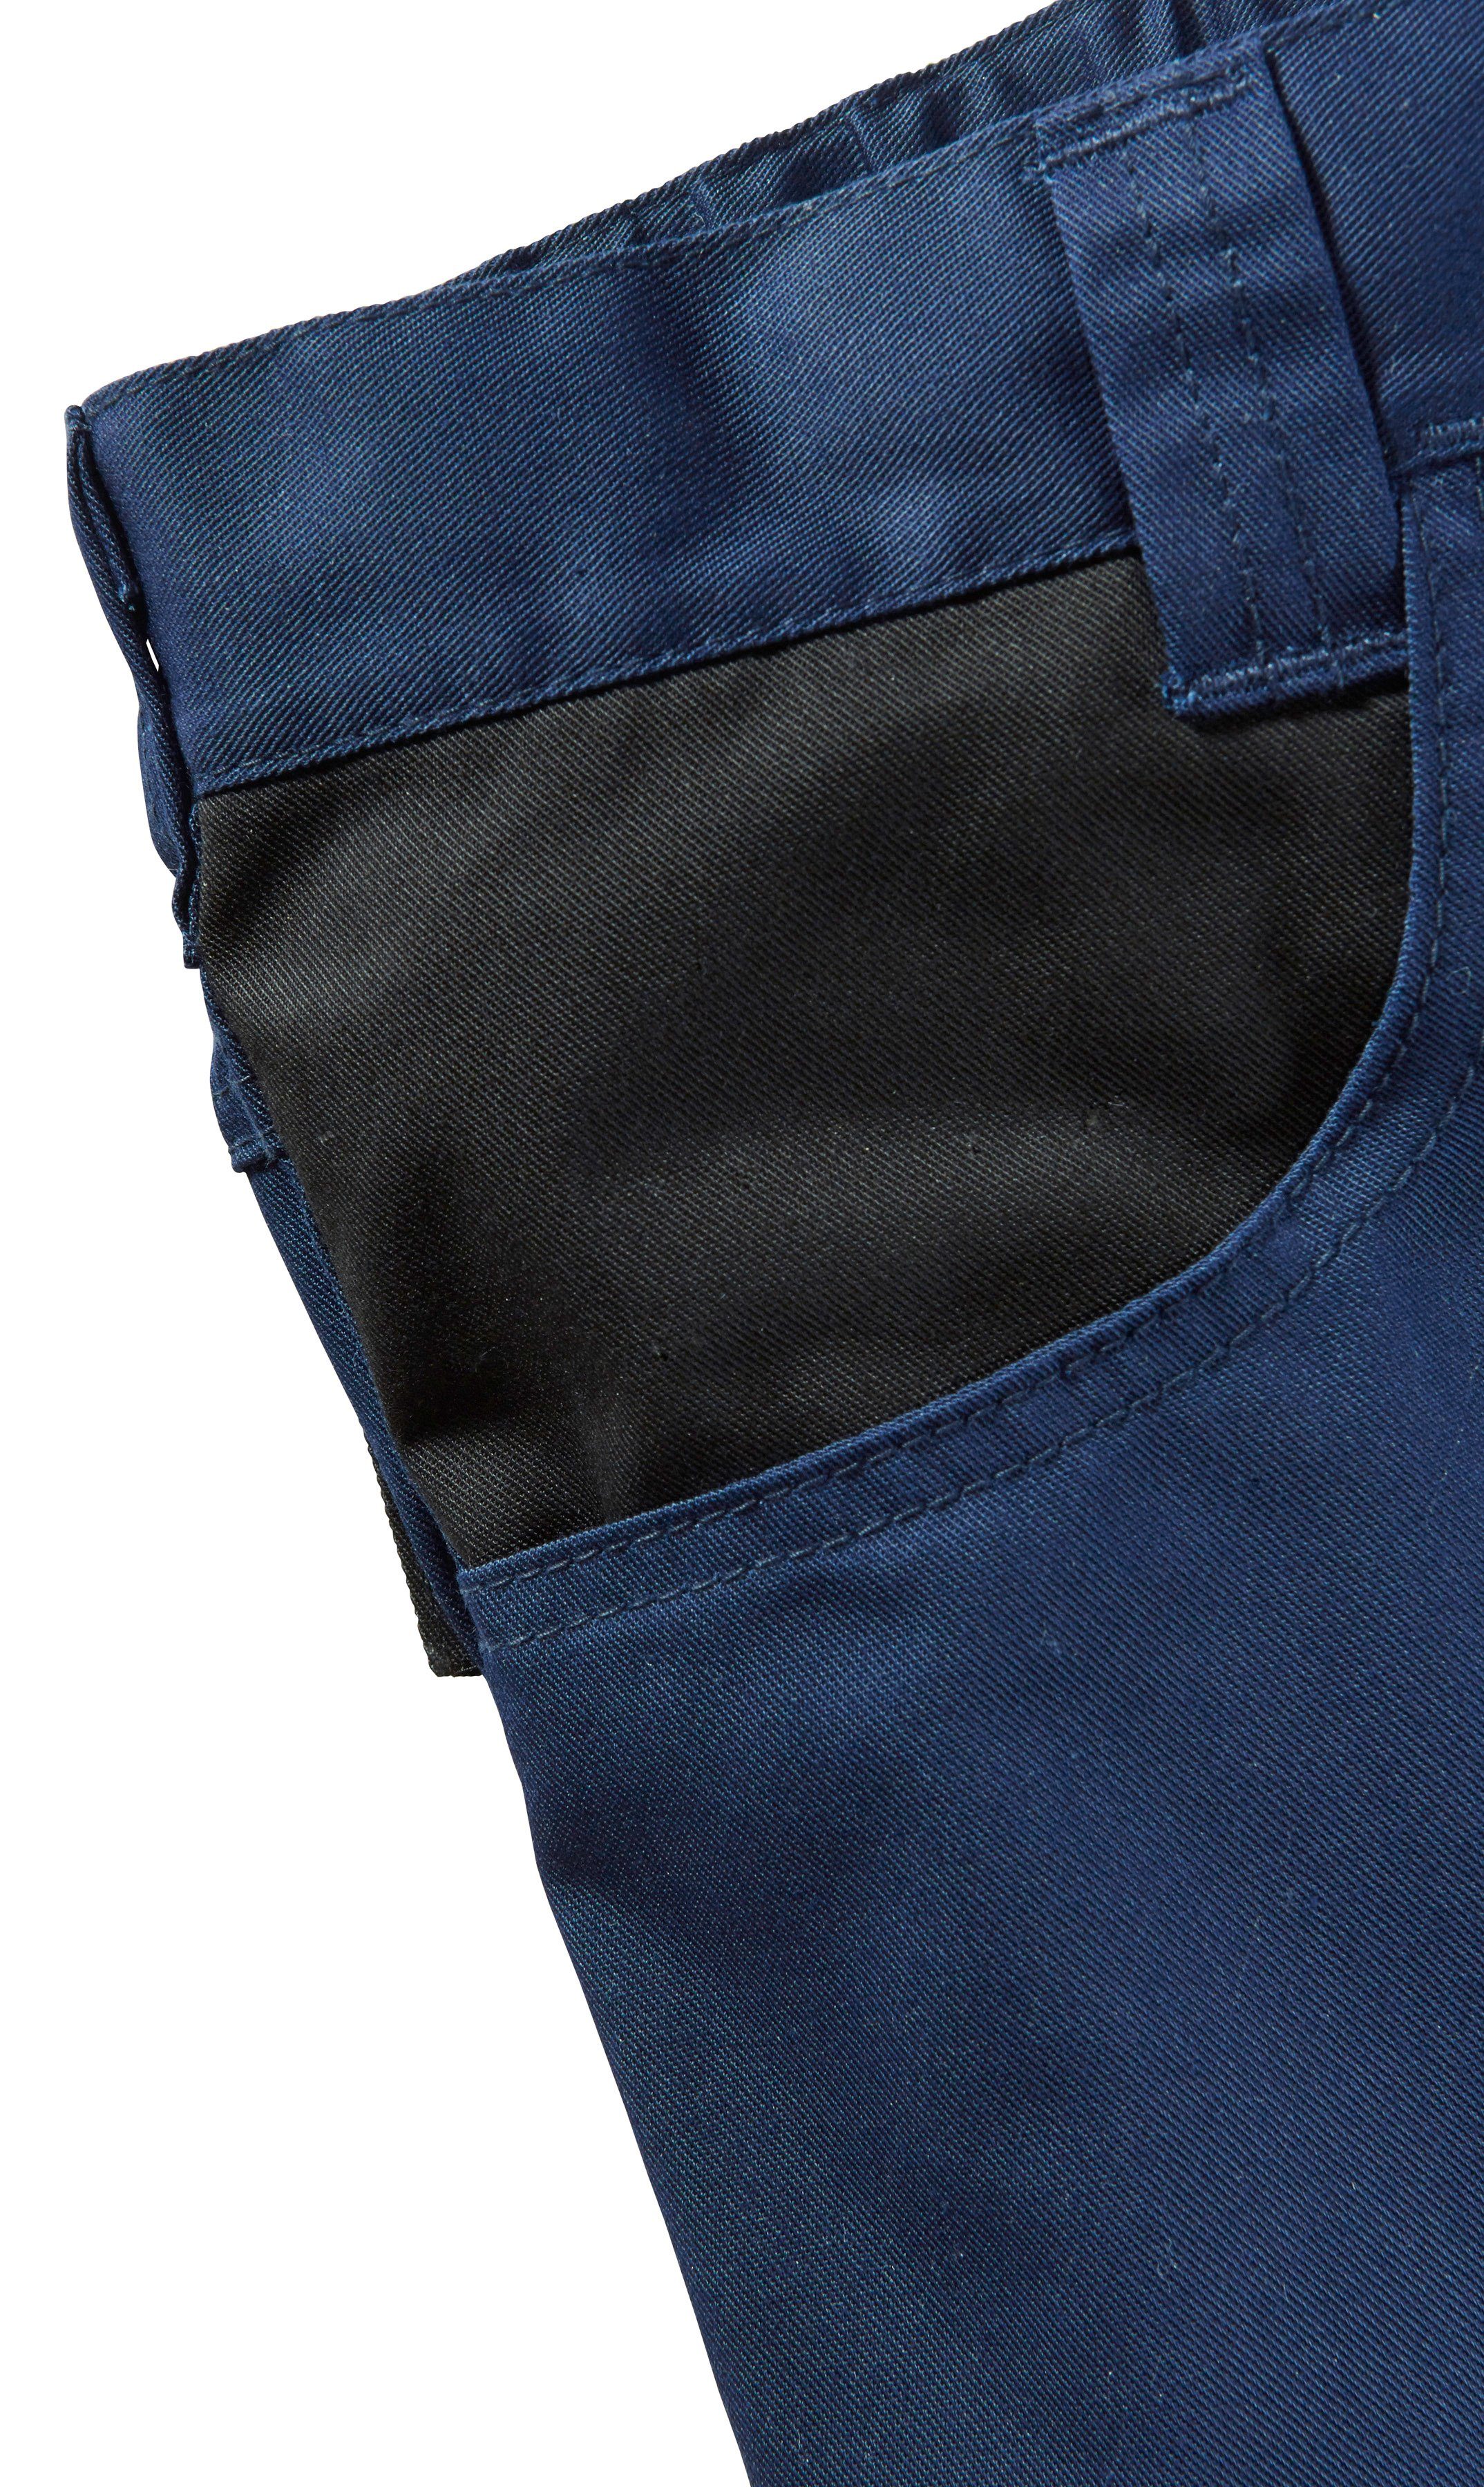 safety& more Arbeitsshorts mar mit Pull dunkelblau-schwarz Reflexeinsatz